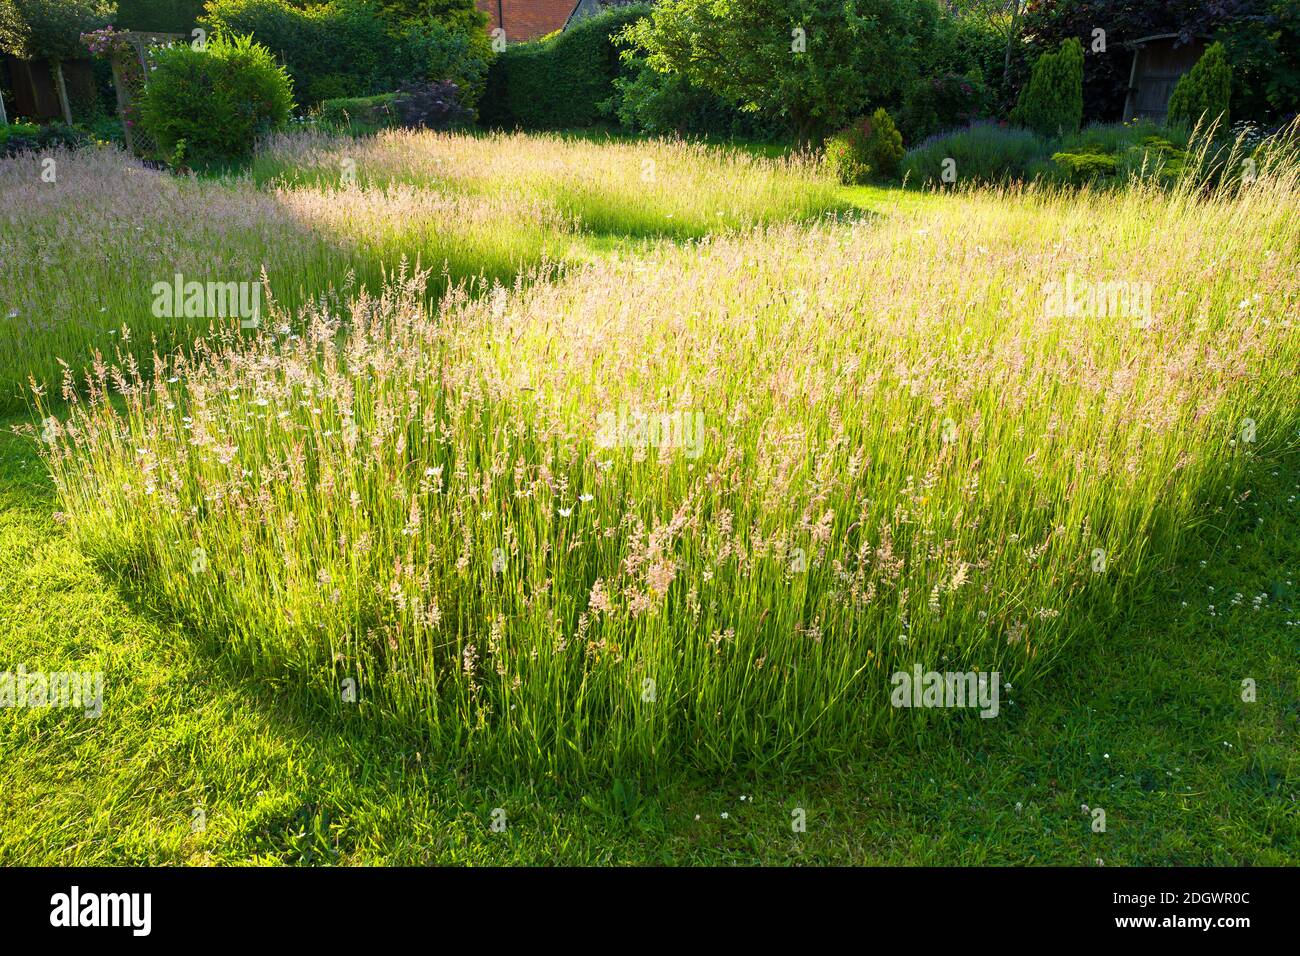 El efecto ornamental de las hierbas floridas del césped permitió permanecer sin cortar durante el verano; proporcionando un hábitat y tierra de alimentación para la fauna silvestre Foto de stock